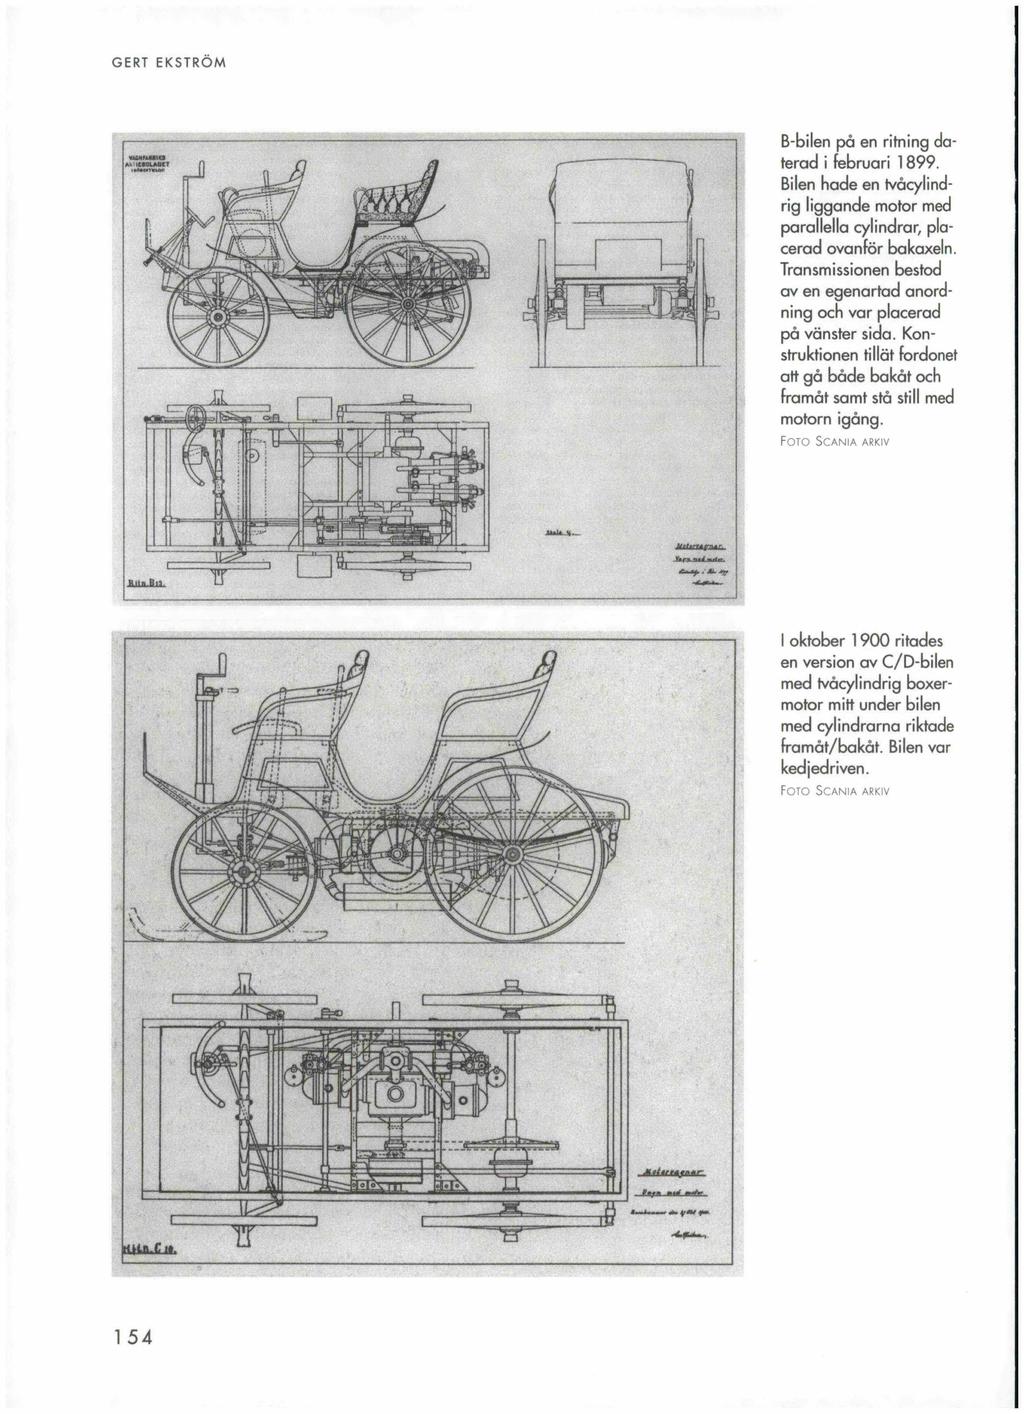 GERT EKSTRÖM B-bilen på en ritning daterad i februari 1899. Bilen hade en tvåcylindrig liggande motor med parallella cylindrar, placerad ovanför bakaxeln.